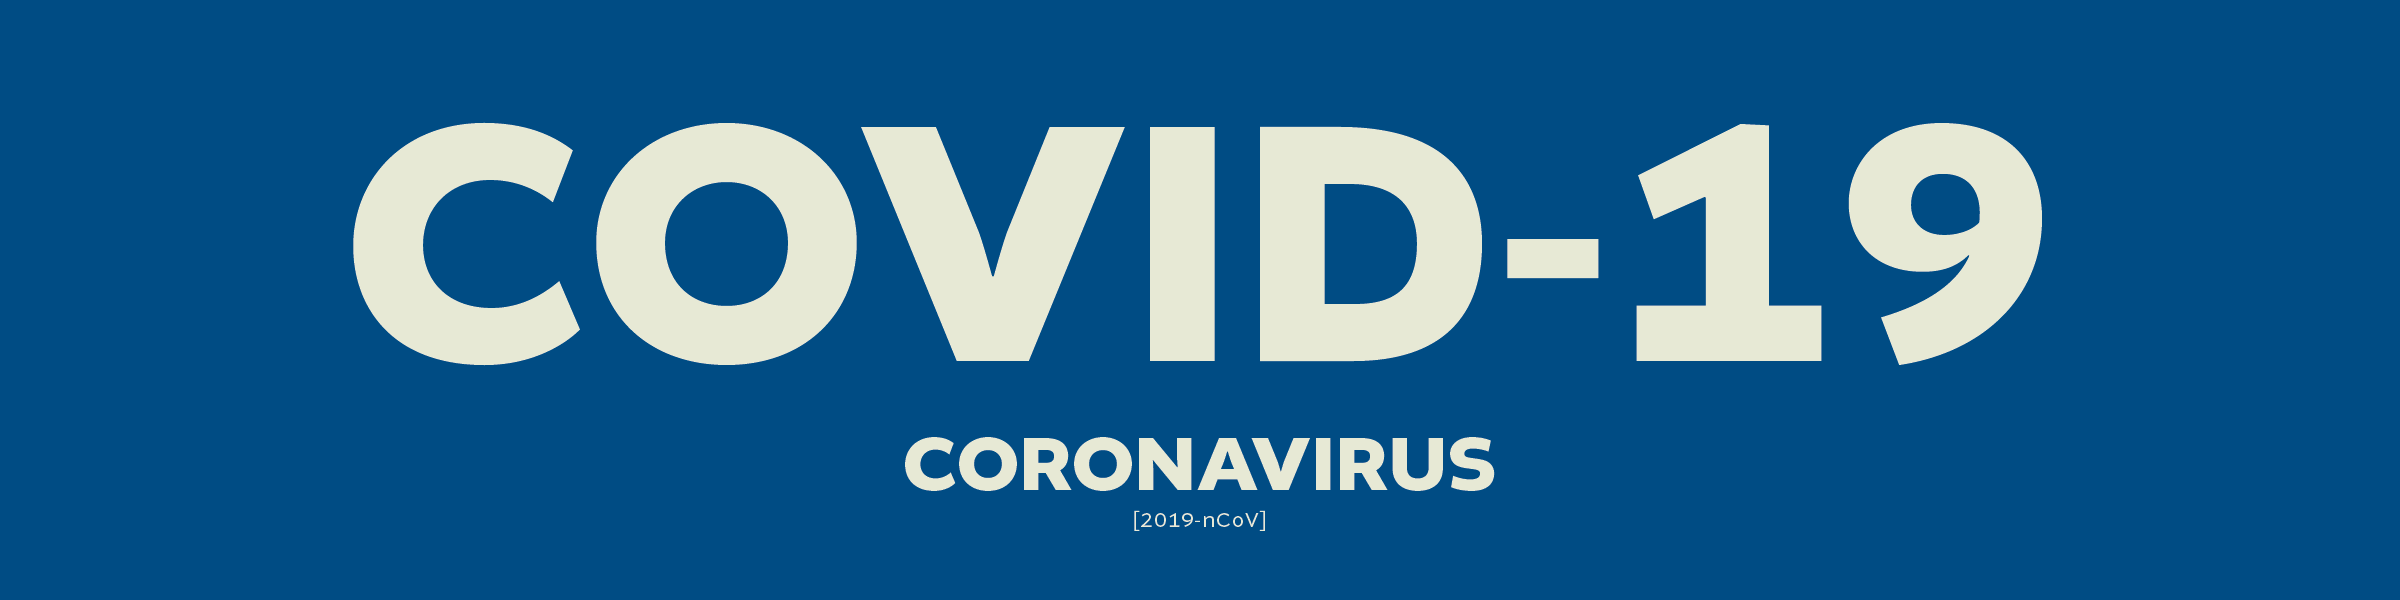 COVID-19 Coronavirus Banner